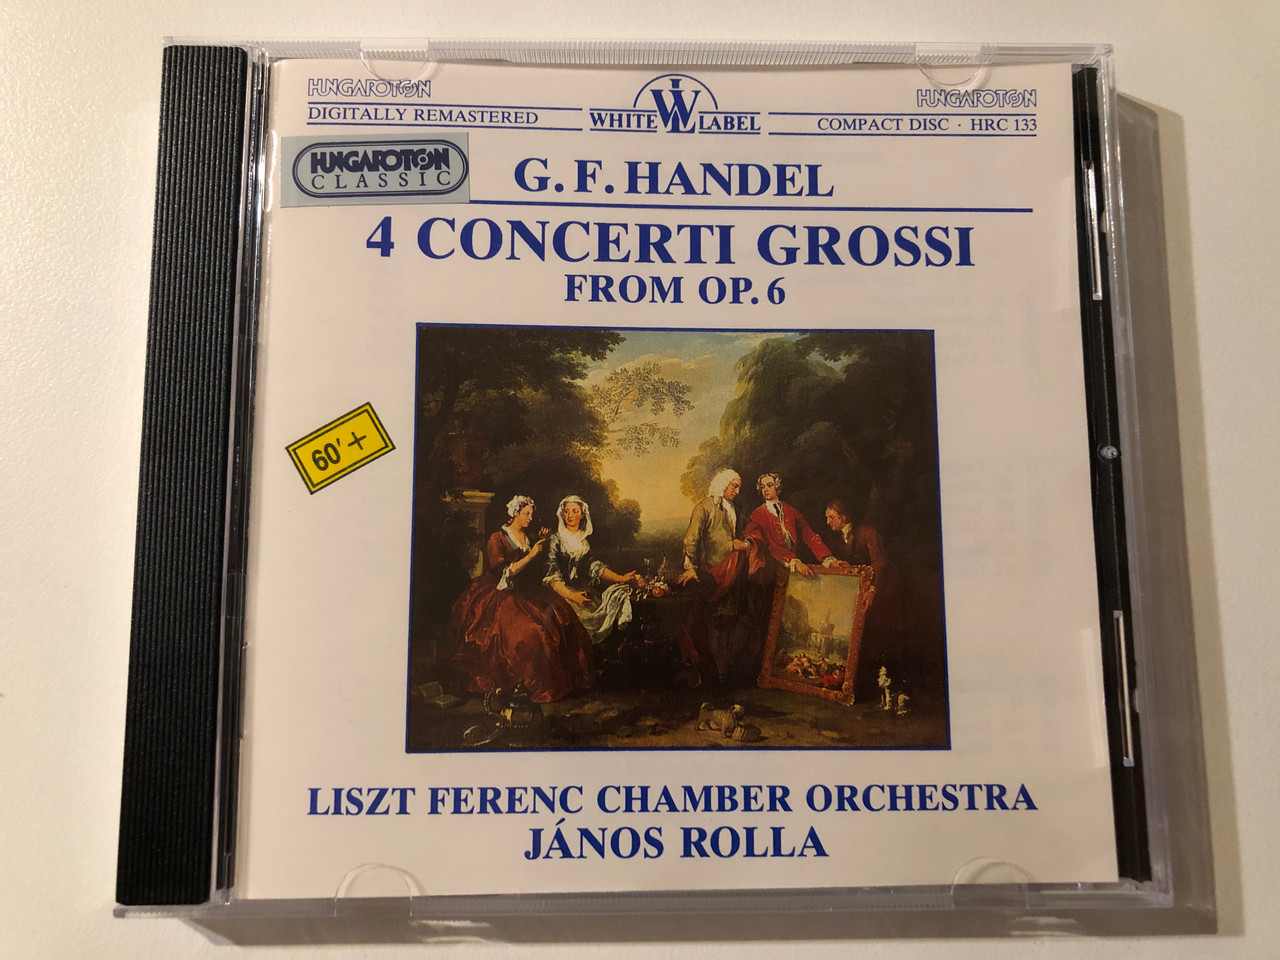 https://cdn10.bigcommerce.com/s-62bdpkt7pb/products/0/images/269923/G._F._Handel_-_4_Concerti_Grossi_From_Op._6_-_Liszt_Ferenc_Chamber_Orchestra_Janos_Rolla_Hungaroton_Classic_Audio_CD_1995_Stereo_HRC_133_1__34172.1679304375.1280.1280.JPG?c=2&_gl=1*1wr9sr0*_ga*MjA2NTIxMjE2MC4xNTkwNTEyNTMy*_ga_WS2VZYPC6G*MTY3OTI5NDk1OC44MTIuMS4xNjc5MzA0MzQ2LjYwLjAuMA..